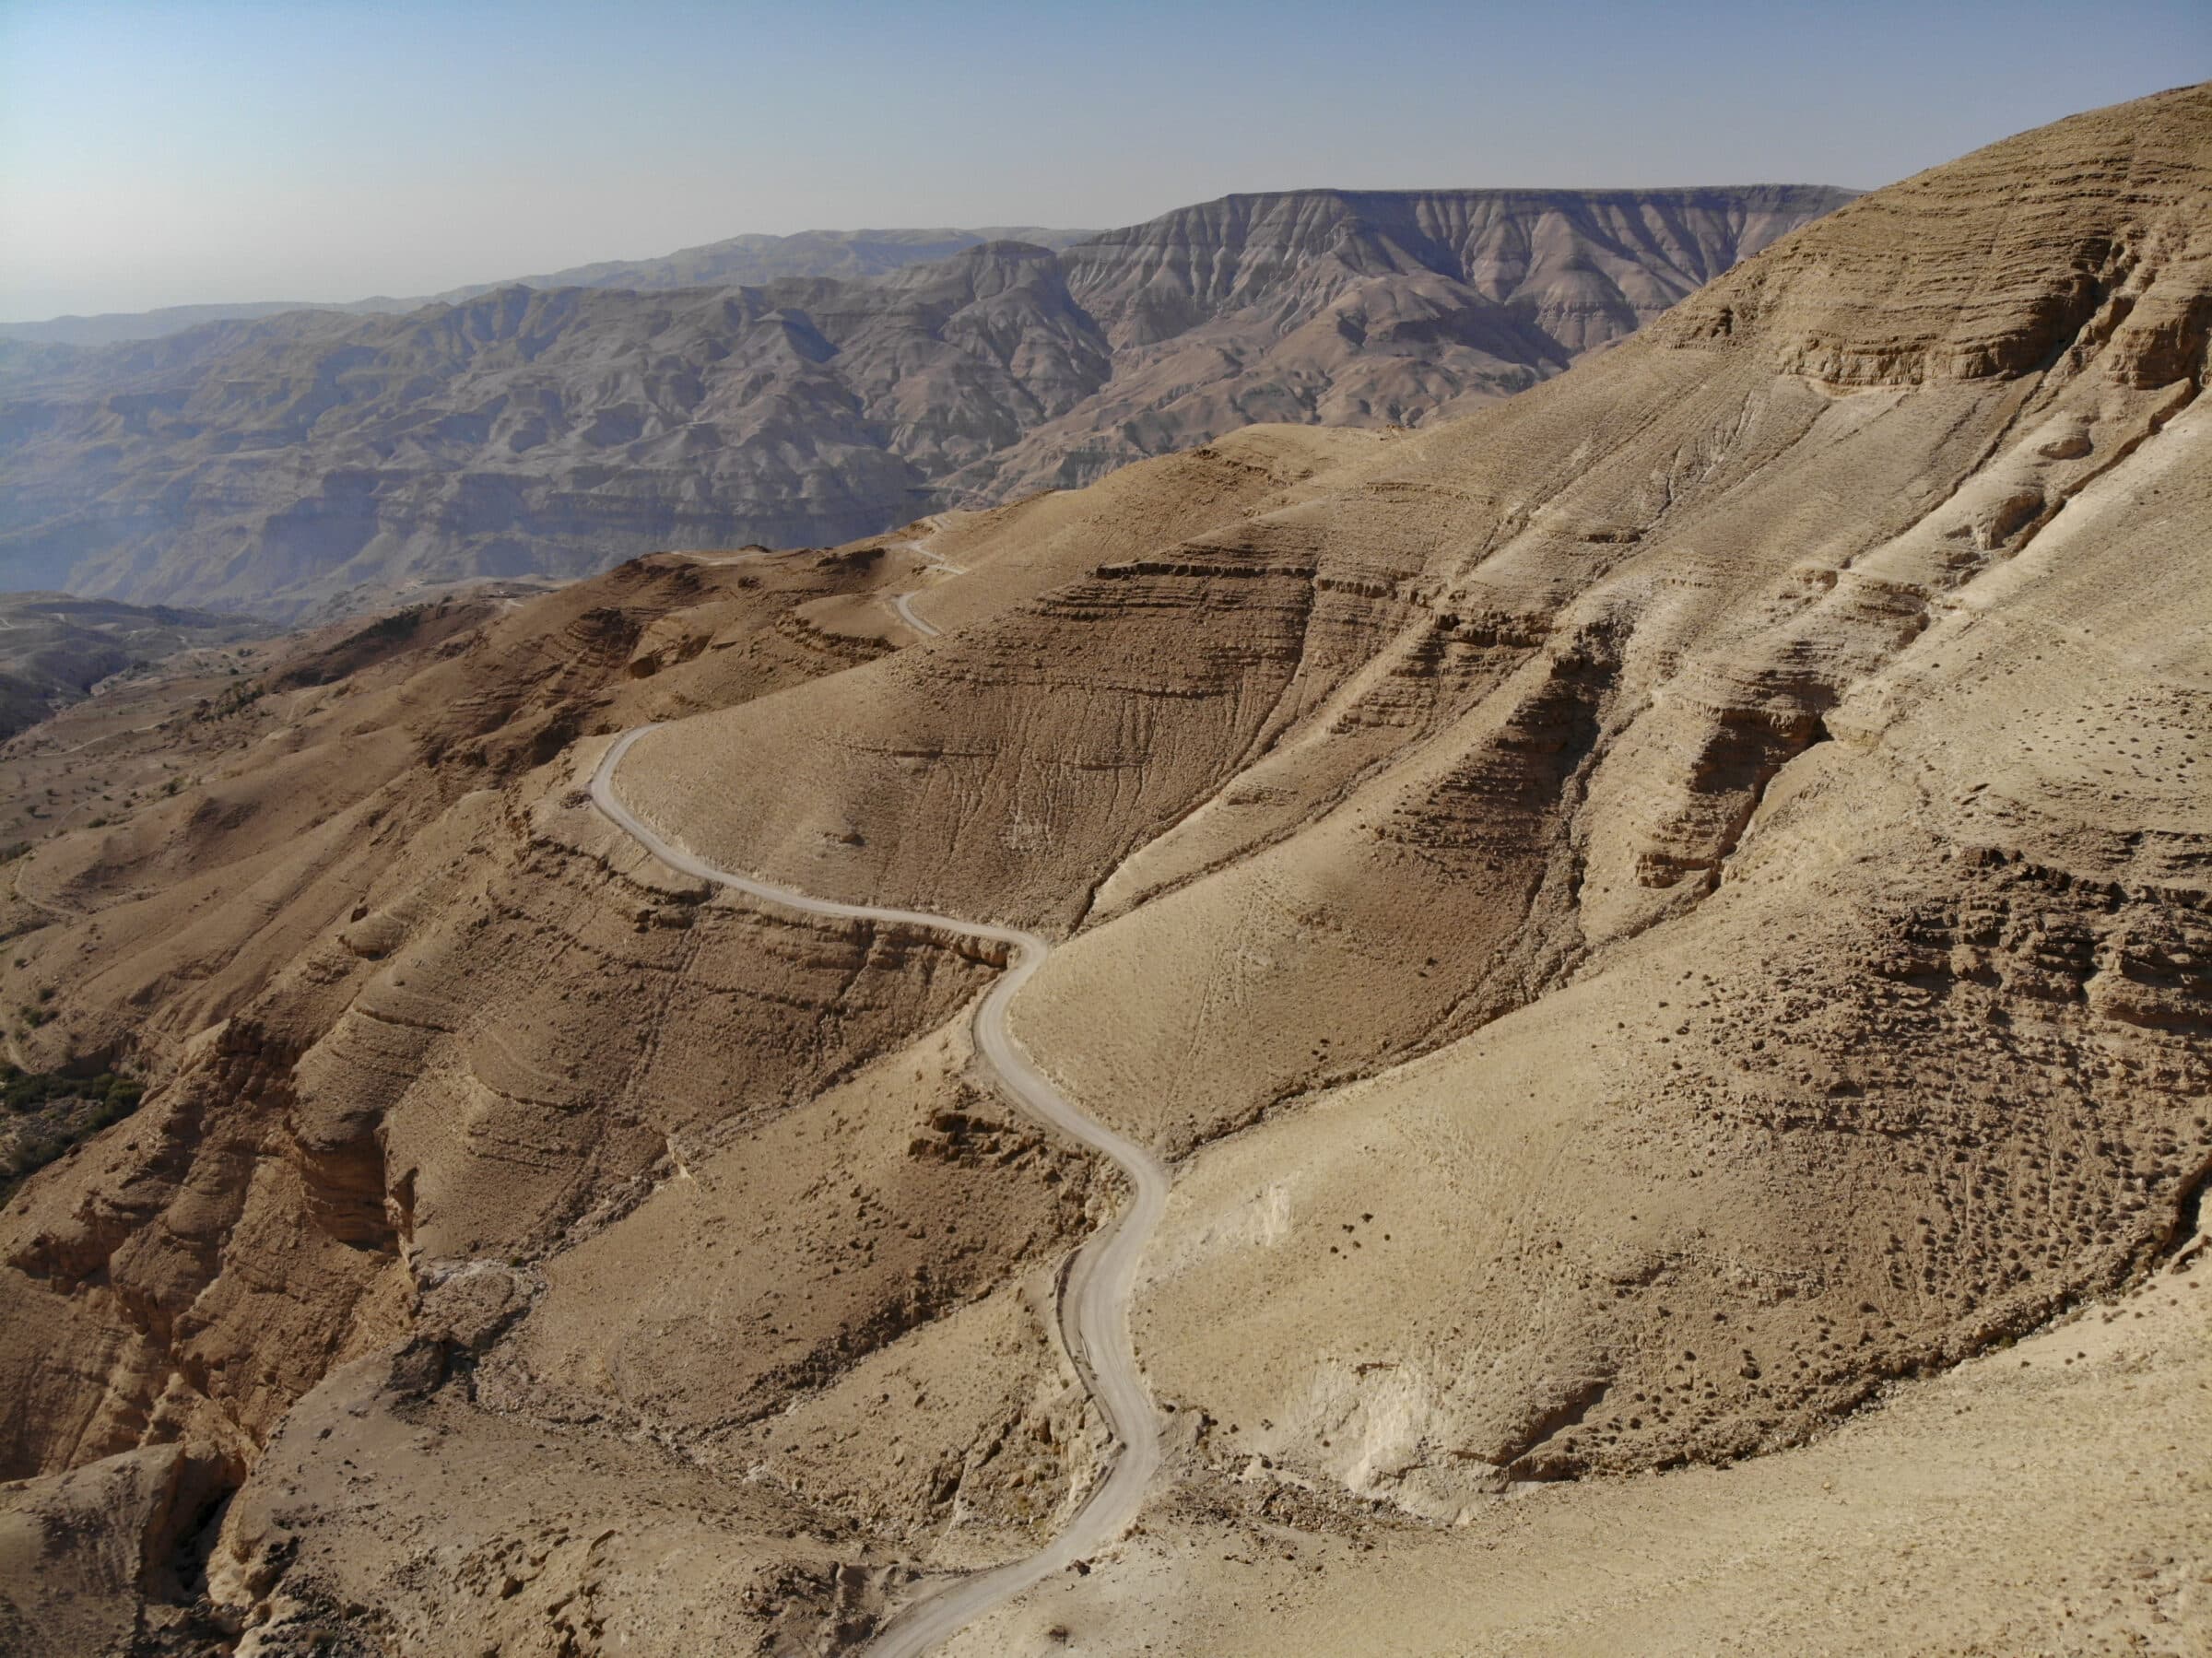 Foto de drone, tirada na Jordânia